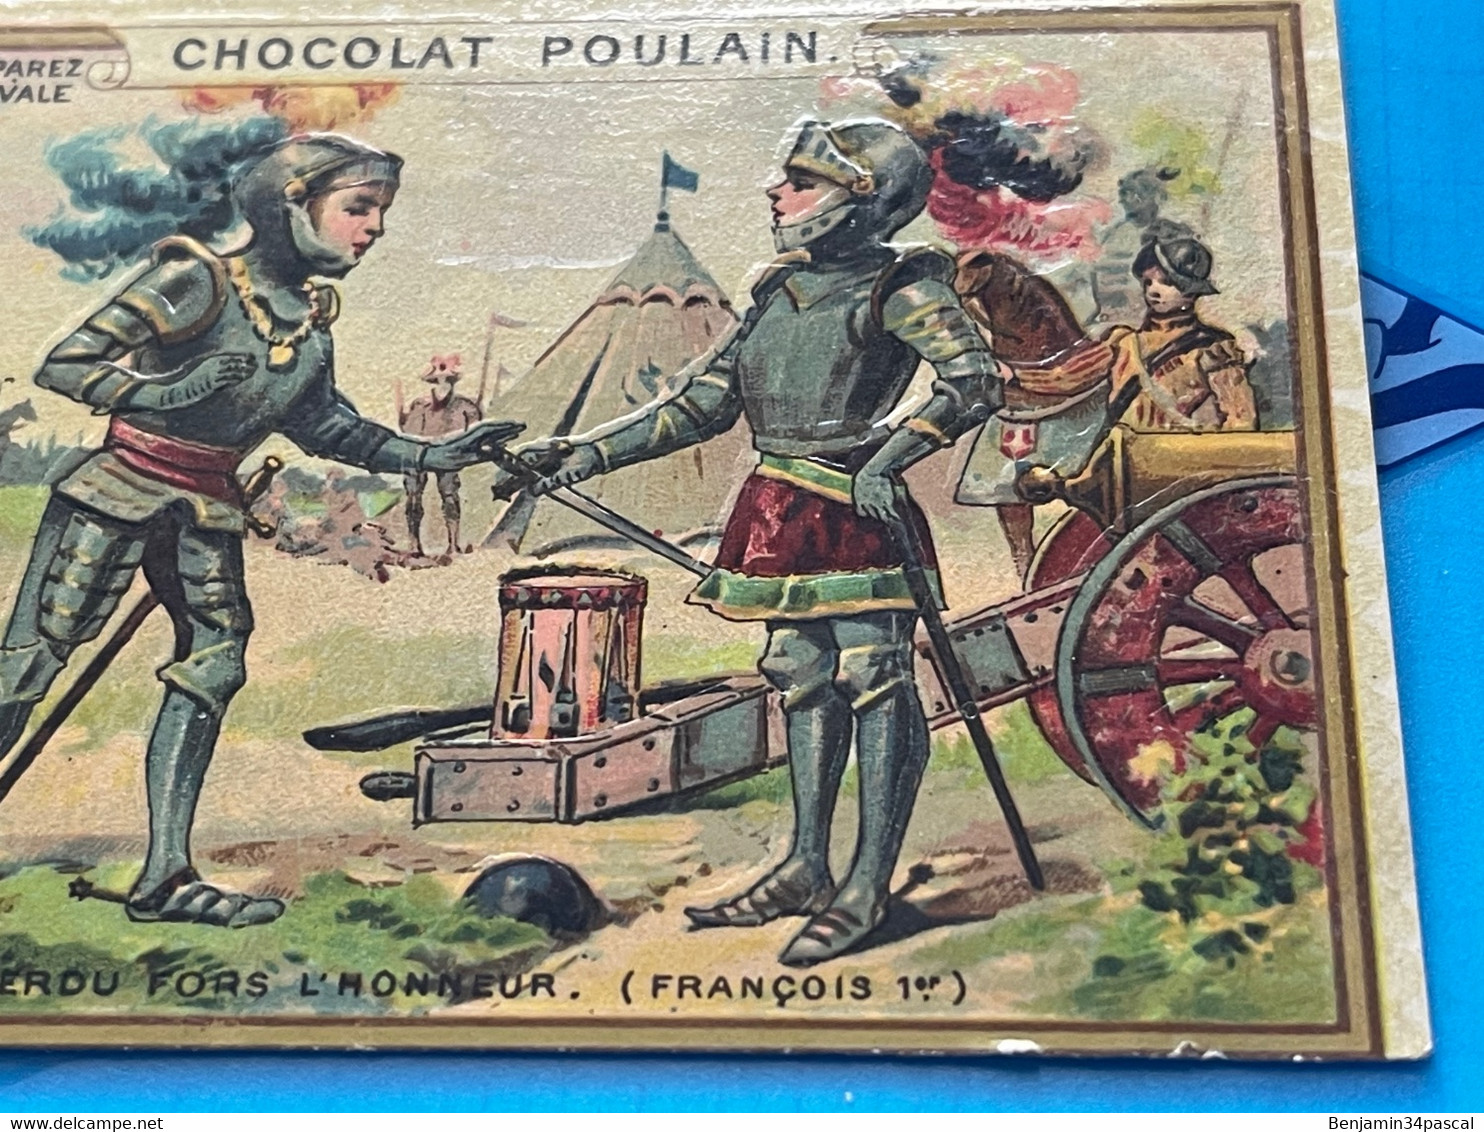 Carte Image Chromo Chocolat Poulain  - Les Mots Historique De François 1er - Tout Est Perdu Fors L’Honneur - Chocolat